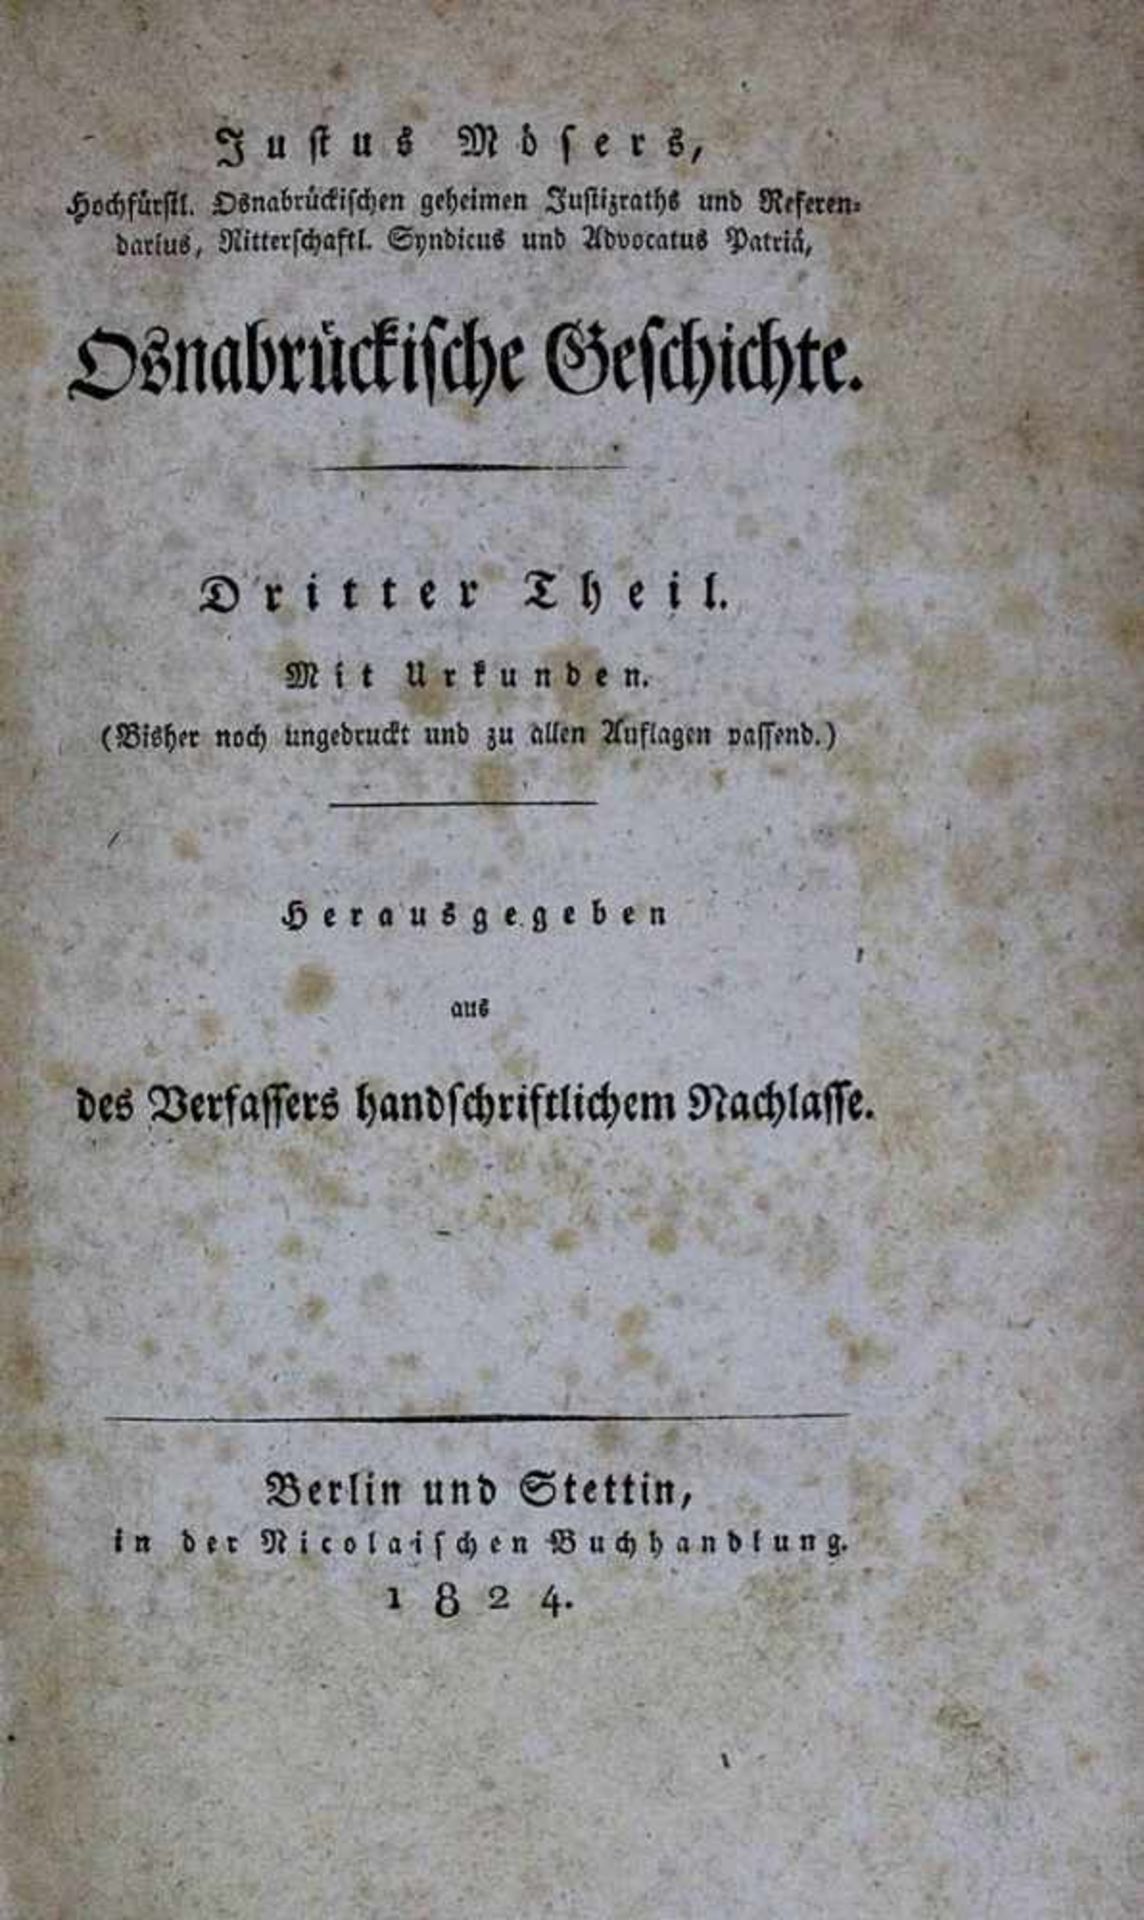 Möser, Justus, Osnabrückische Geschichte, Berlin und Stettin 1819 - 1824, Band ein und zwei in 3.